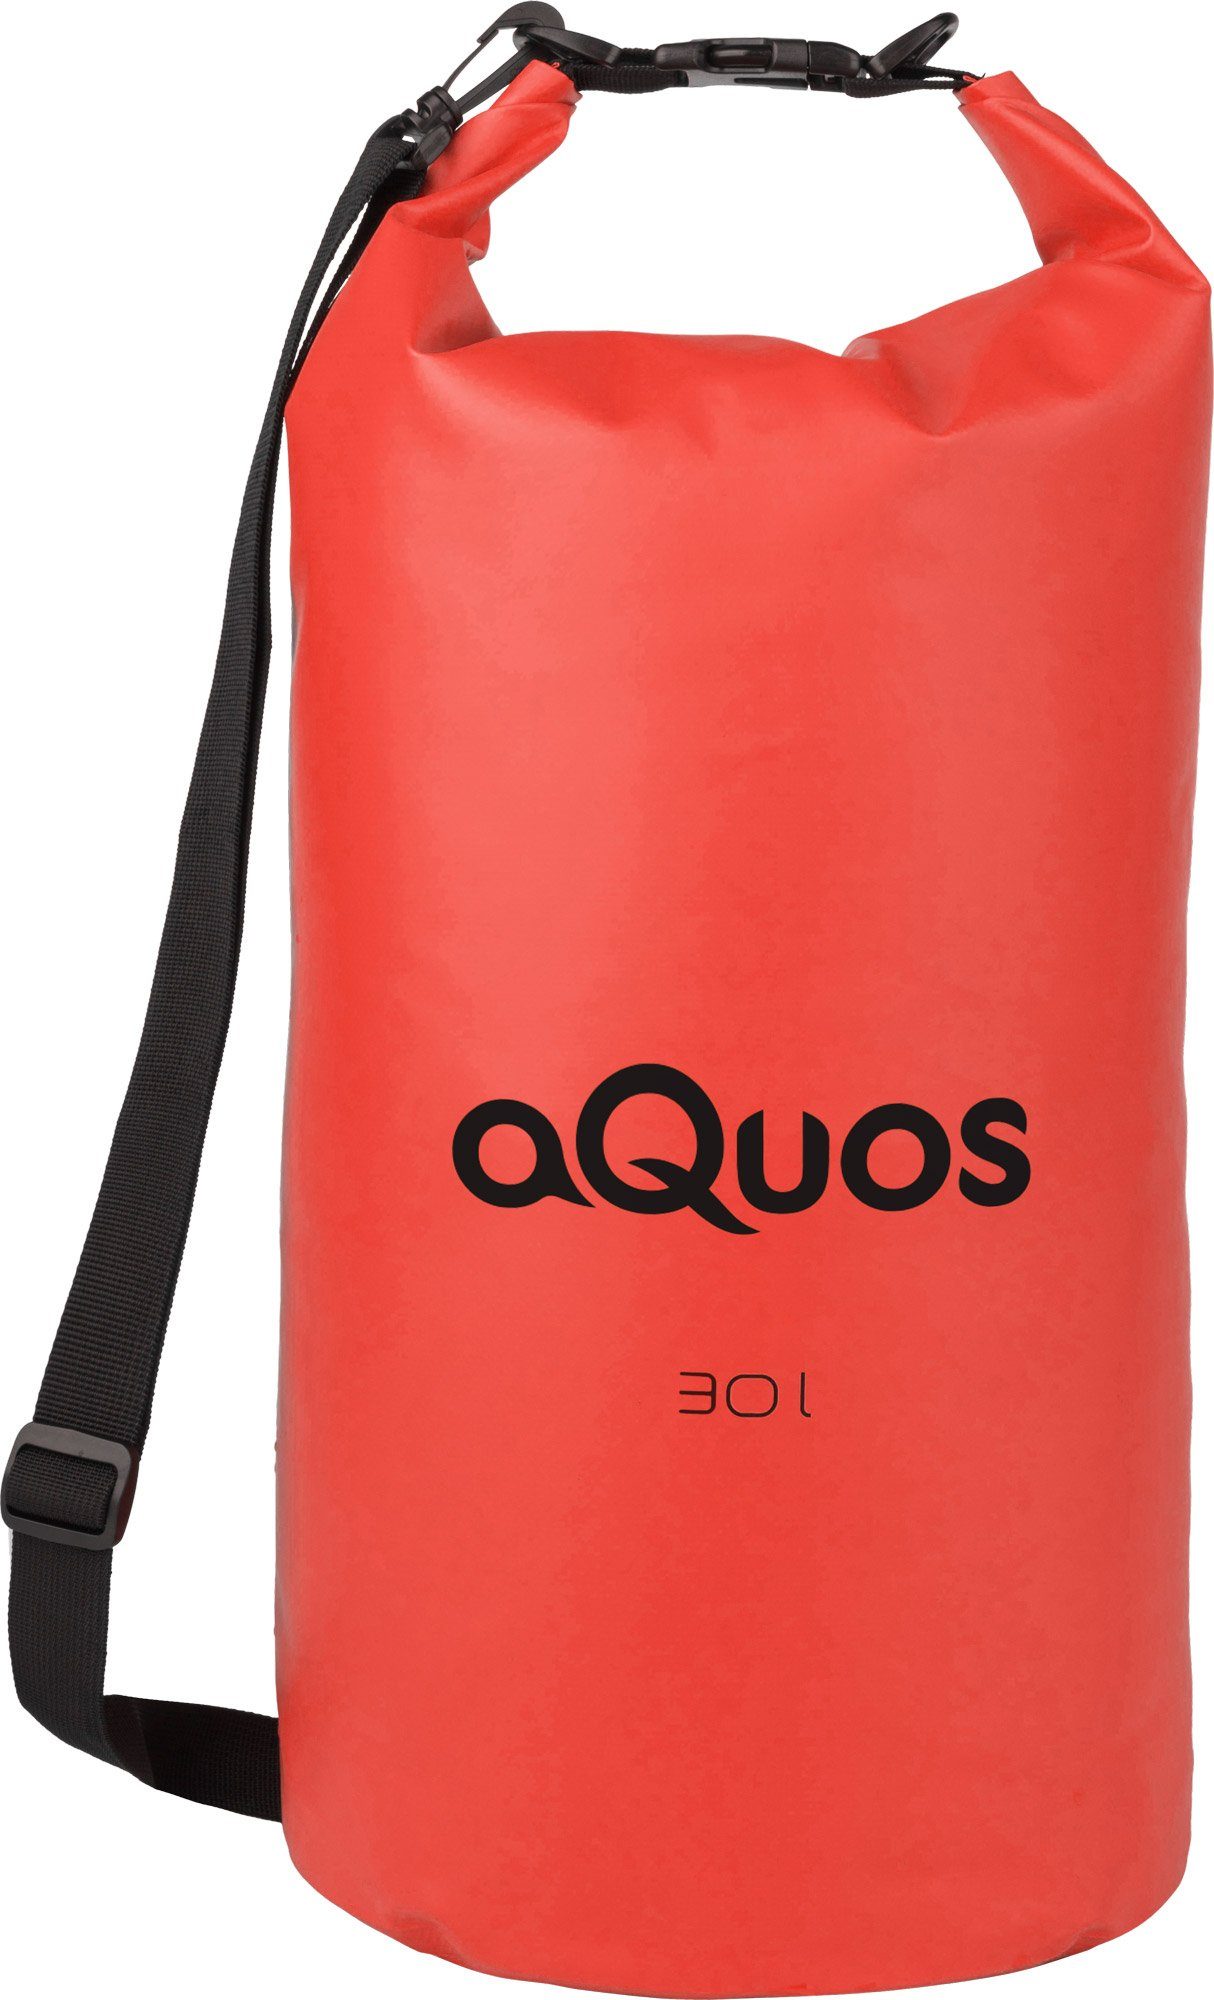 aQuos Drybag aQuos Dry Bag 30 Liter orange wasserdichter Packsack, wasserdicht